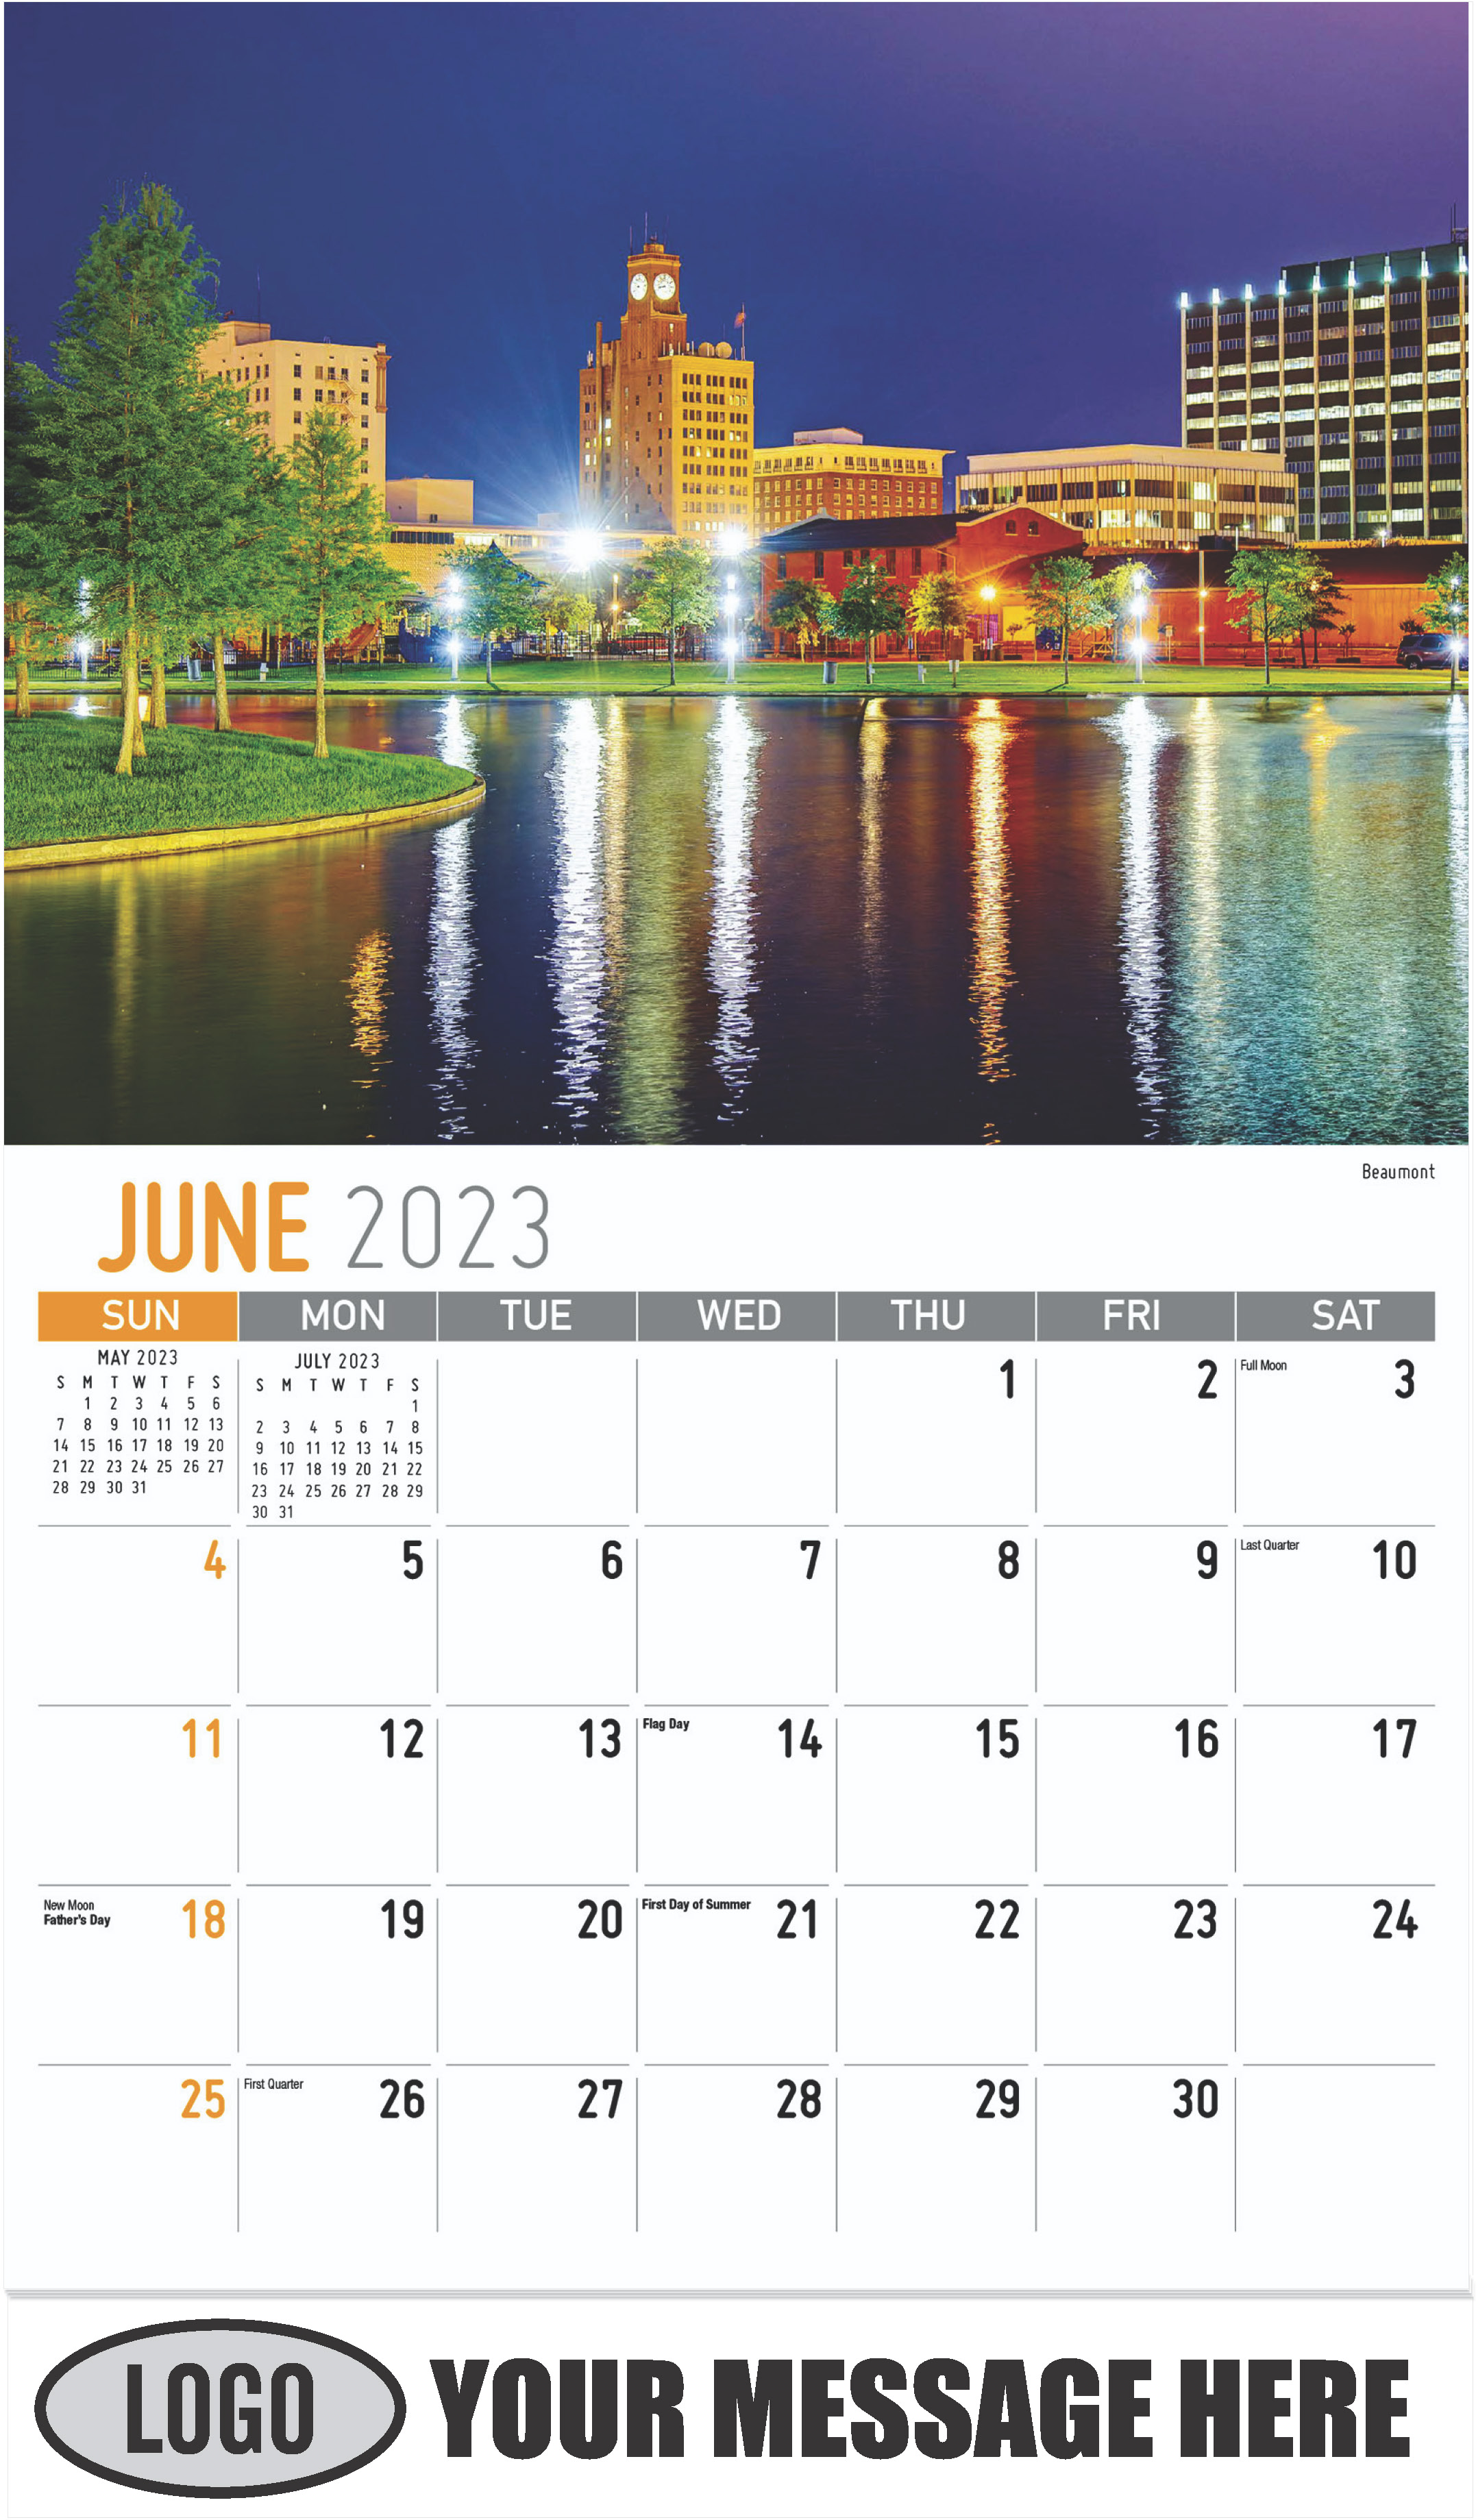 Beaumont - June - Scenes of Texas 2023 Promotional Calendar